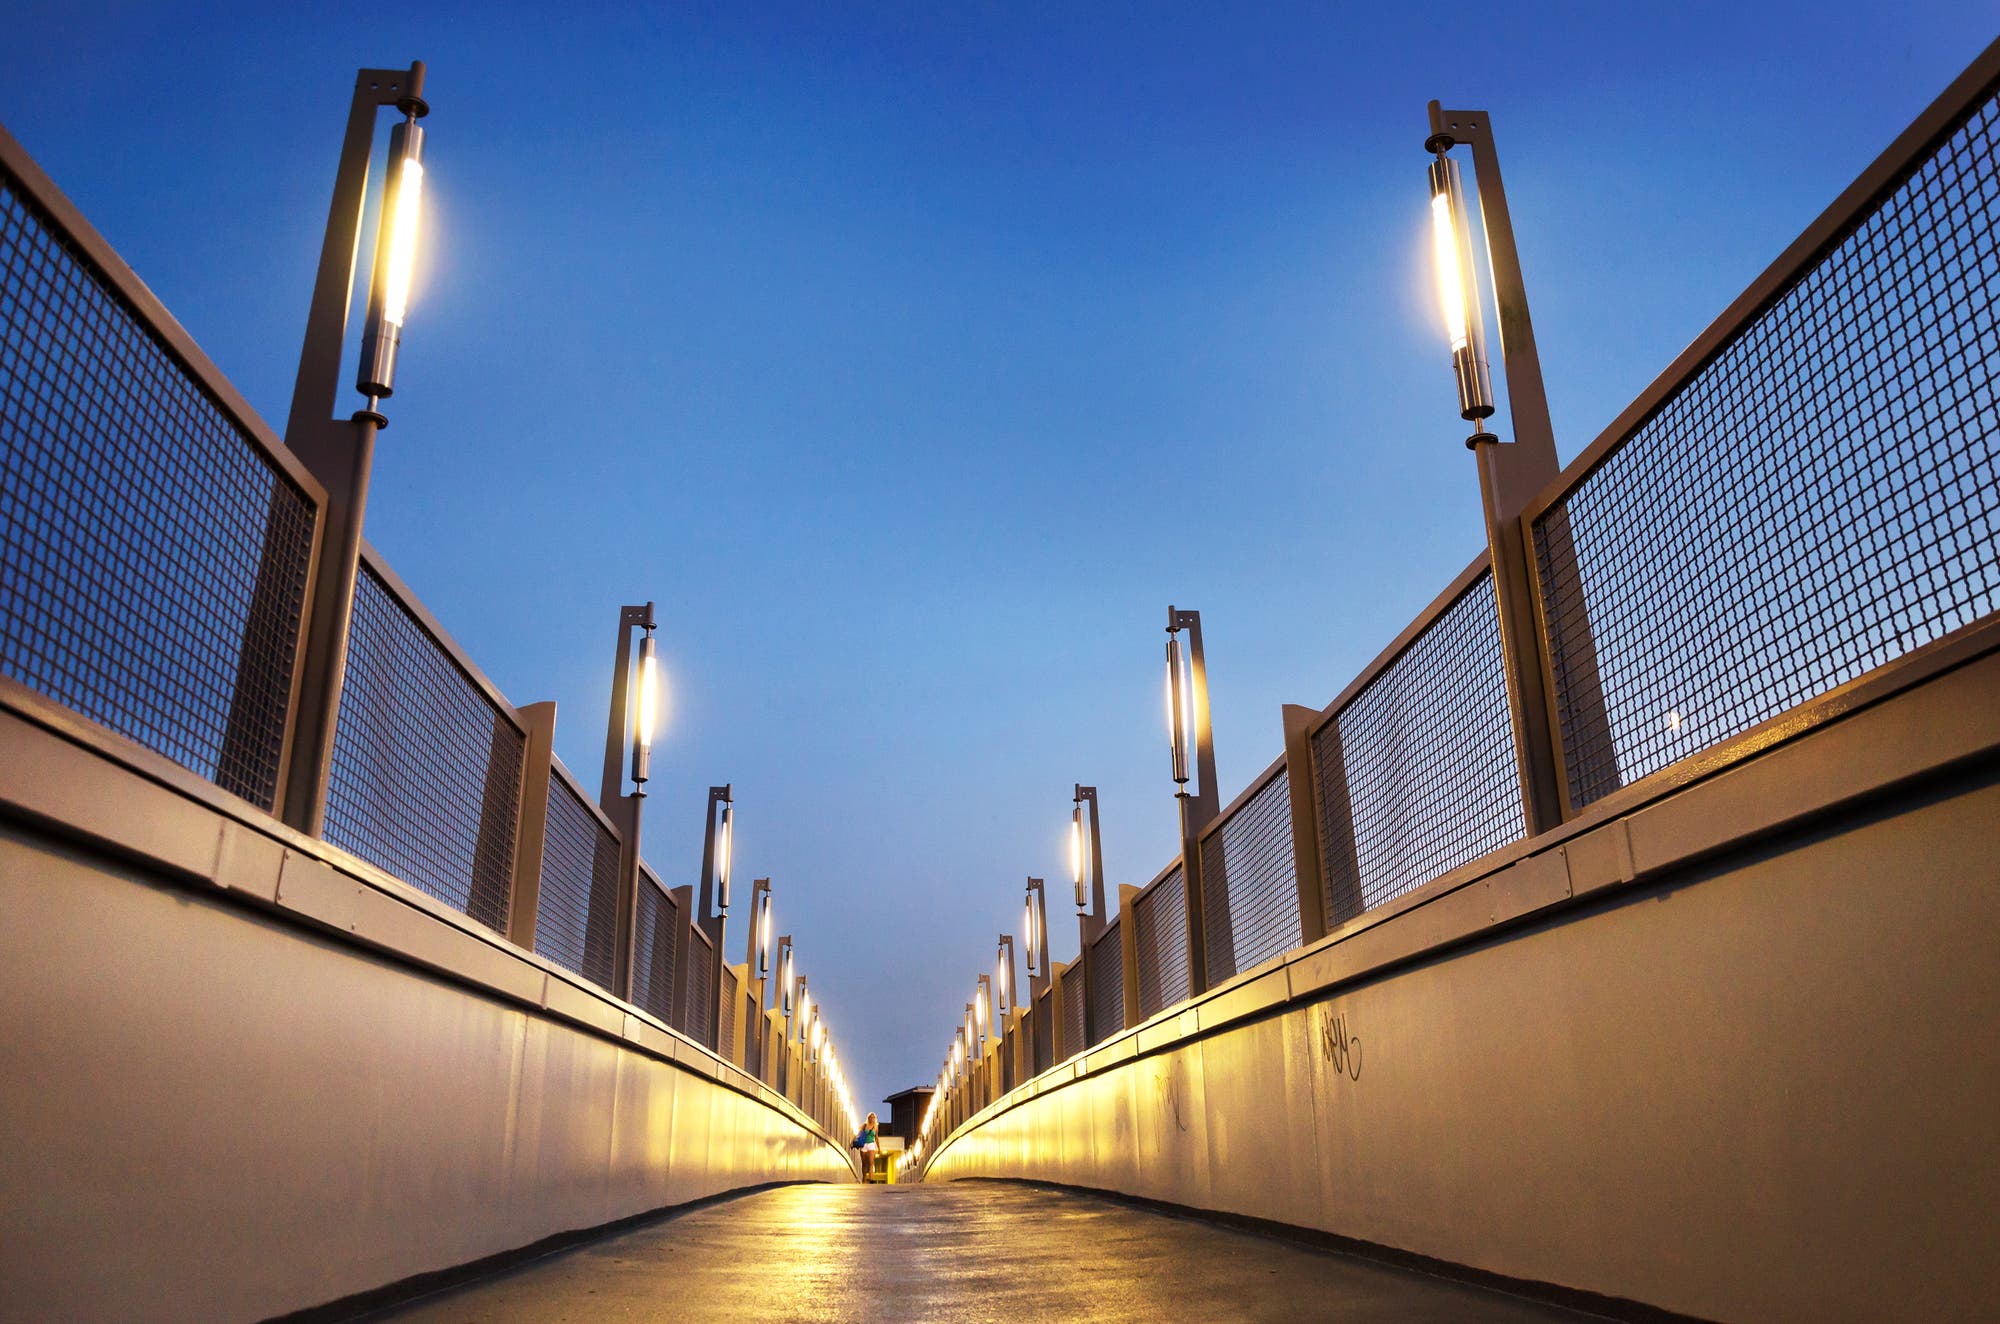 Beleuchtete Fußgängerbrücke sorgt für Lichtverschmutzung